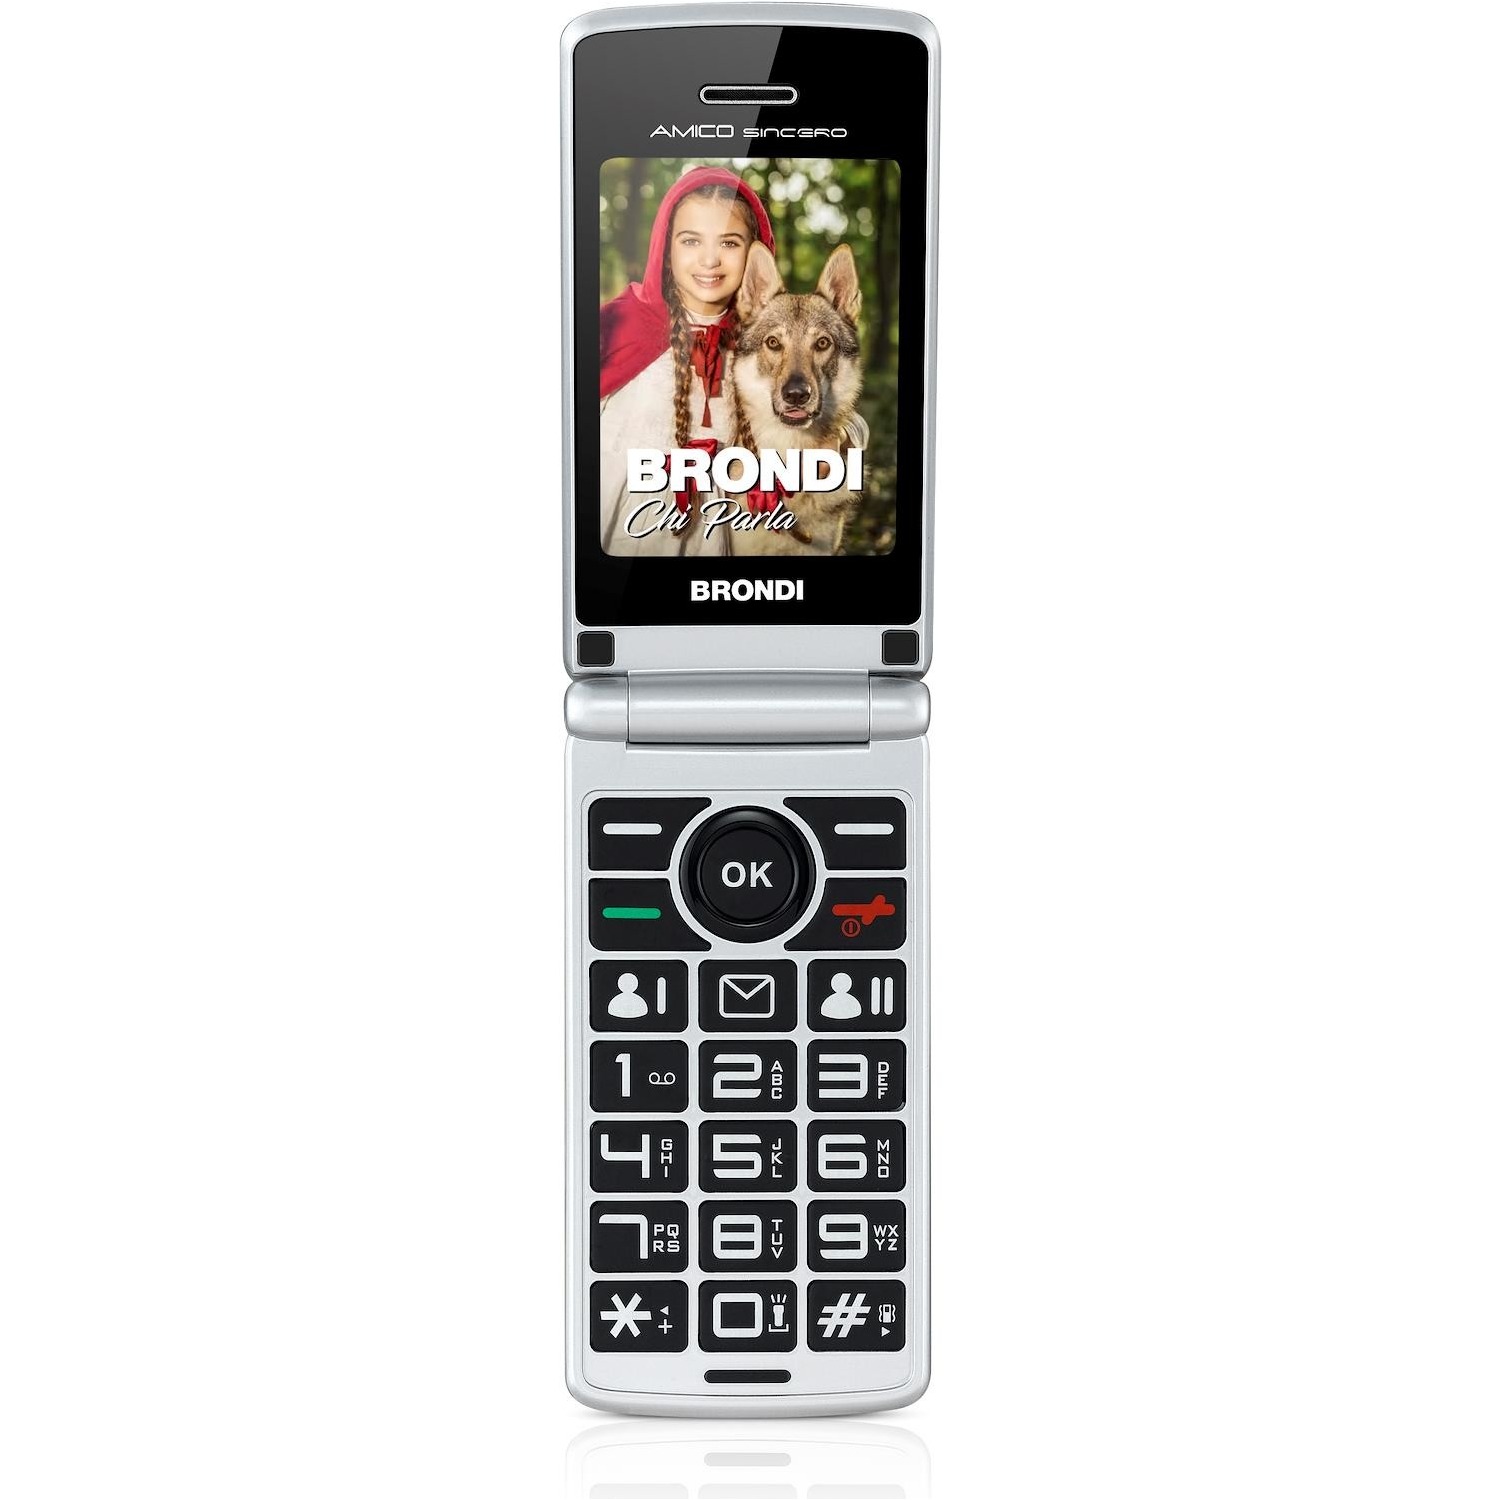 Immagine per Cellulare Brondi Easy Phone Amico sincero grigio da DIMOStore